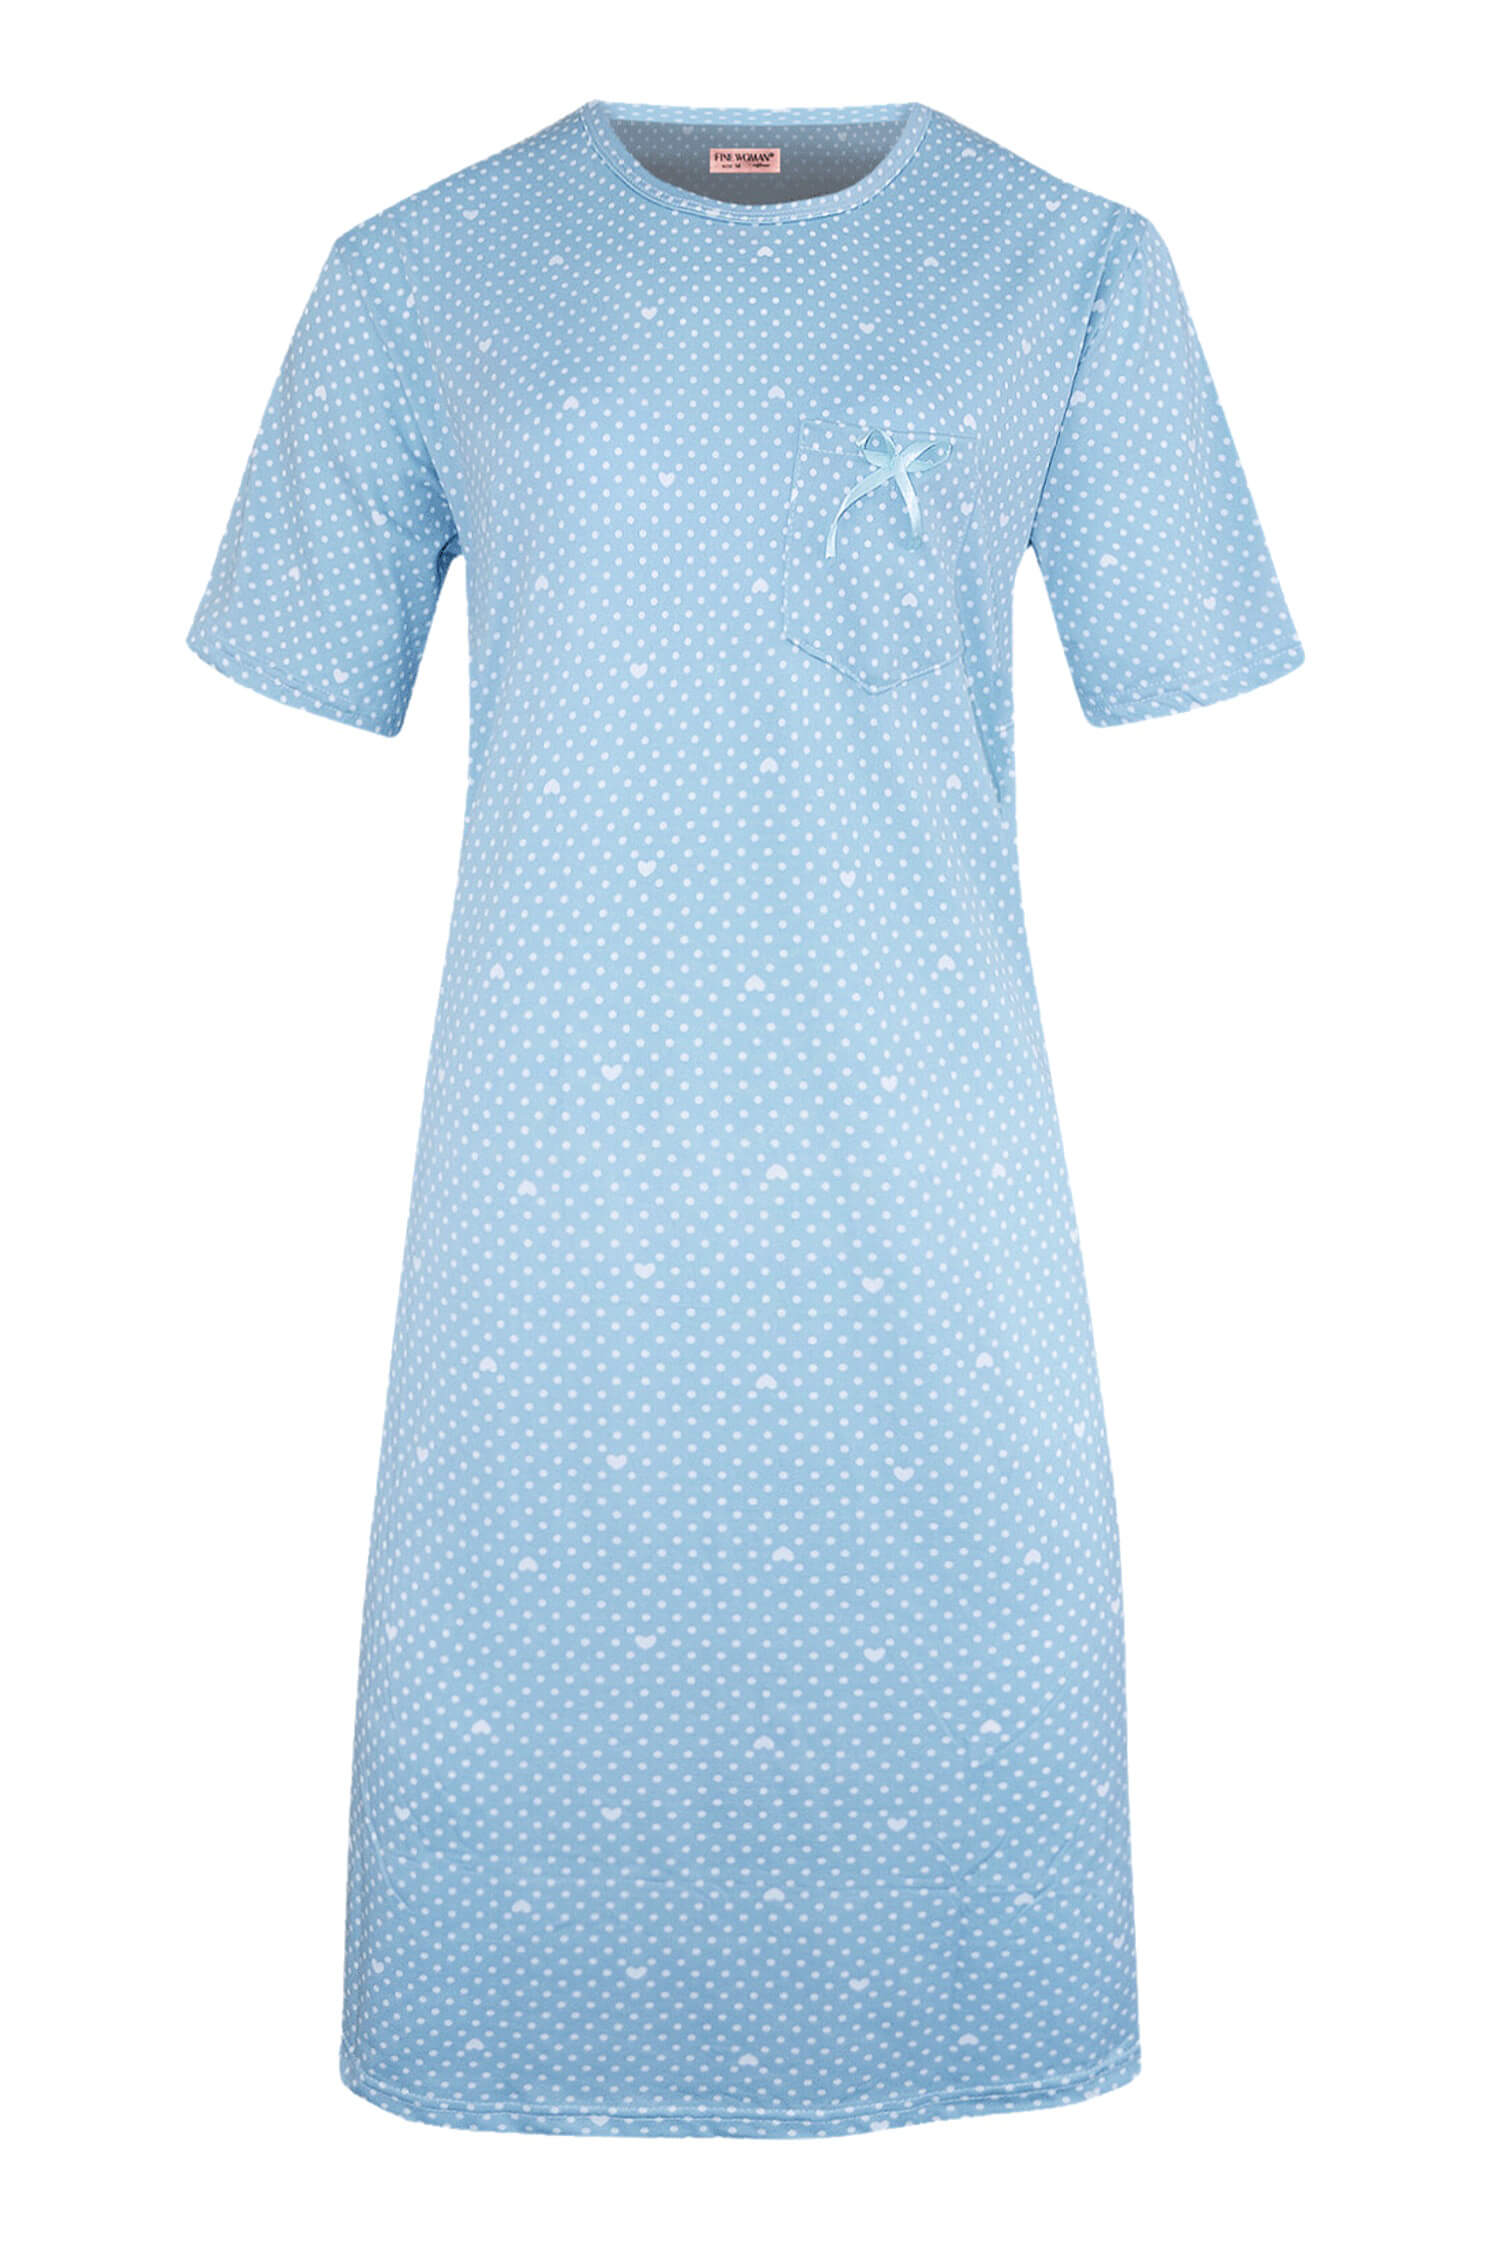 Danuška dámská noční košile s puntíky 6528 L světle modrá